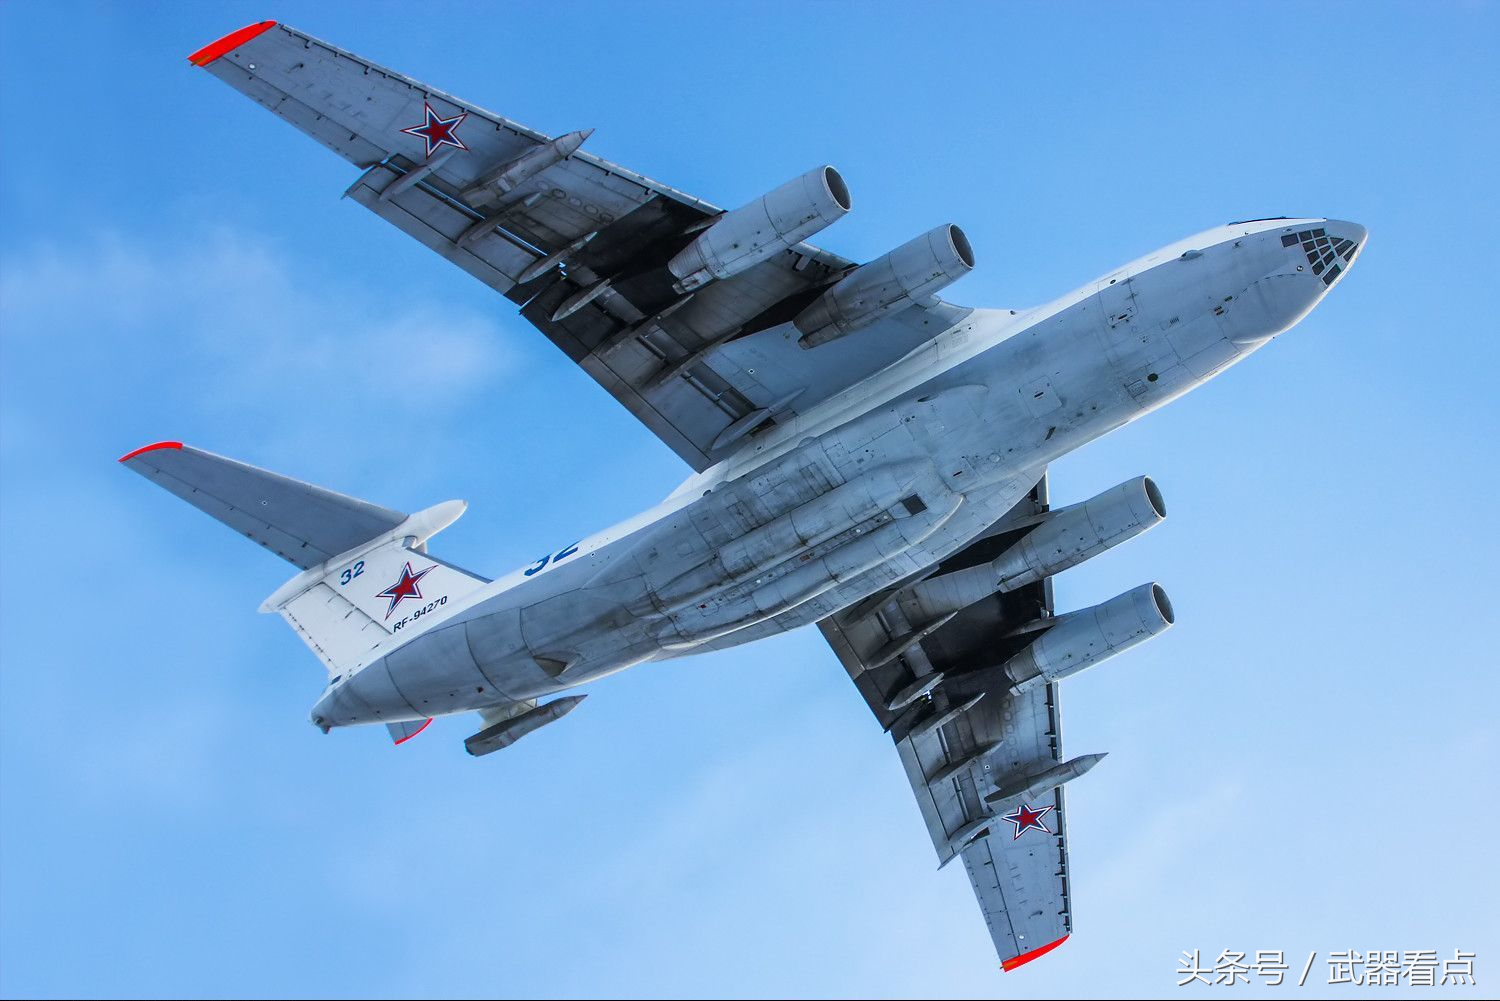 伊尔-78空中加油机——最震撼的高清相片!